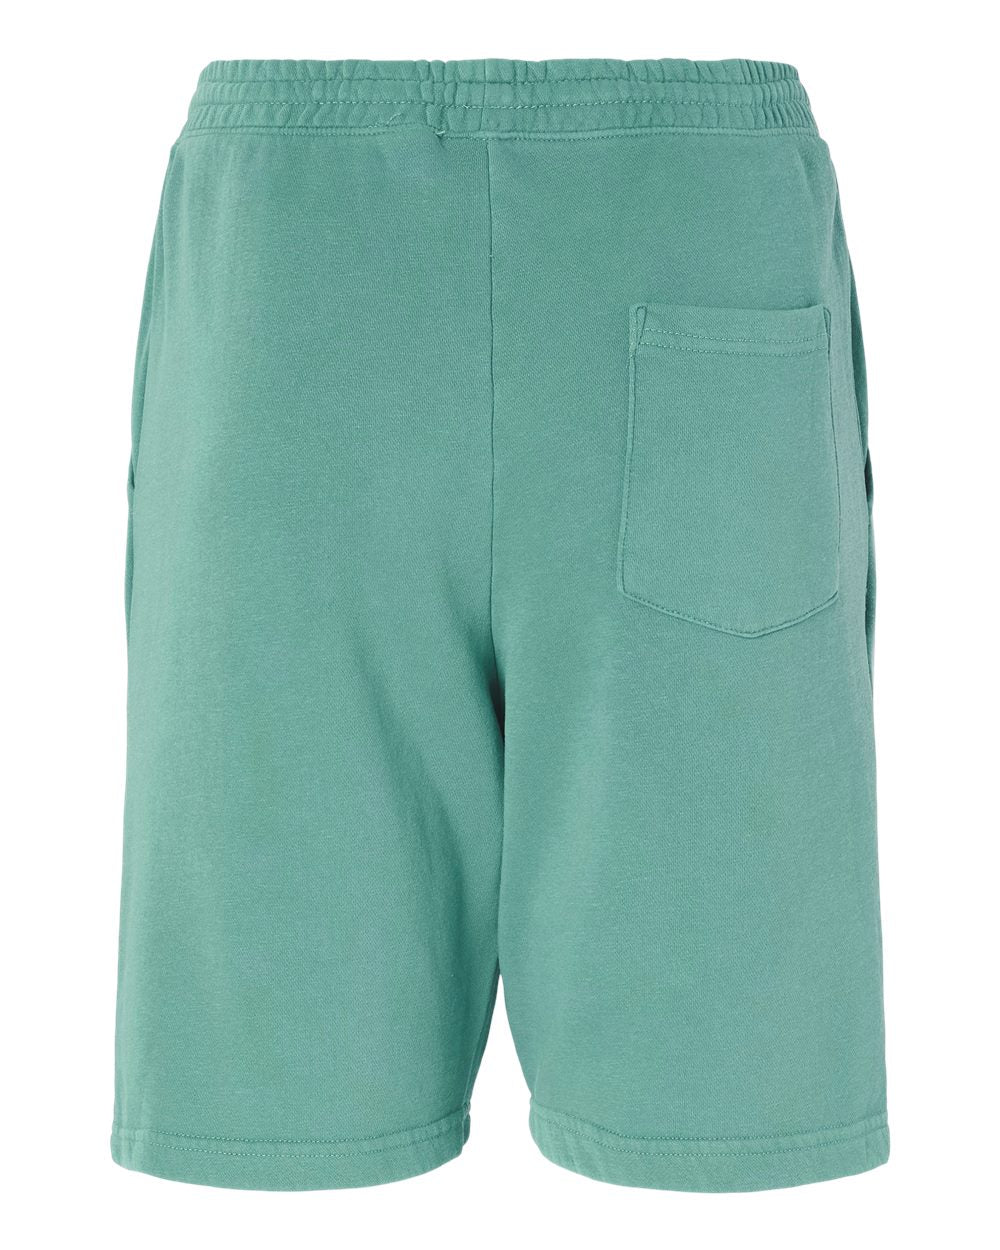 SOULSKY Men's Fleece Shorts (Mint)